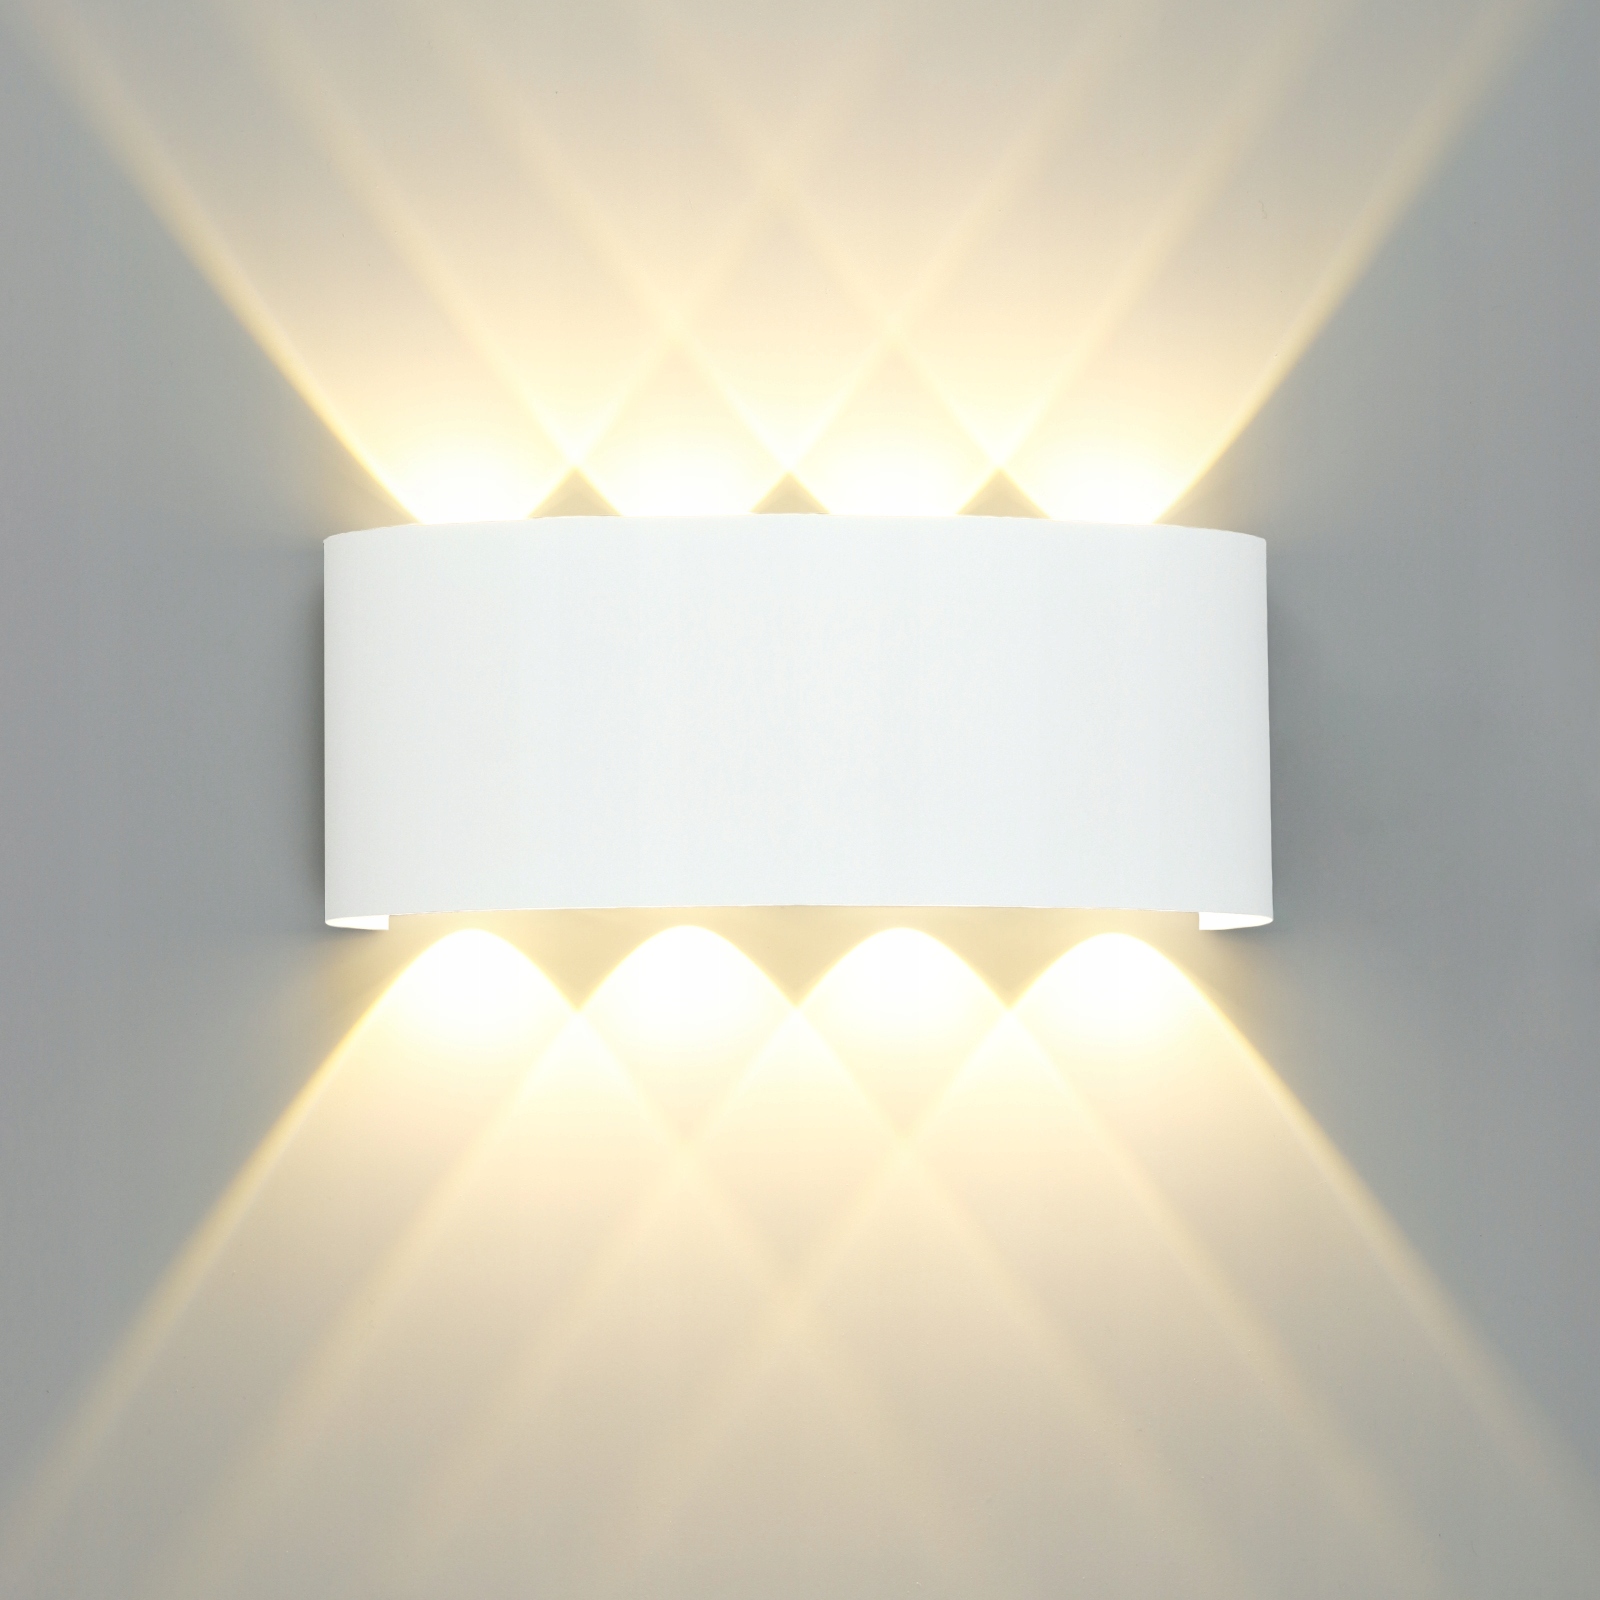 Kinkiet Cherryhomer biały zintegrowane źródło LED W - porównaj ceny - Allegro.pl